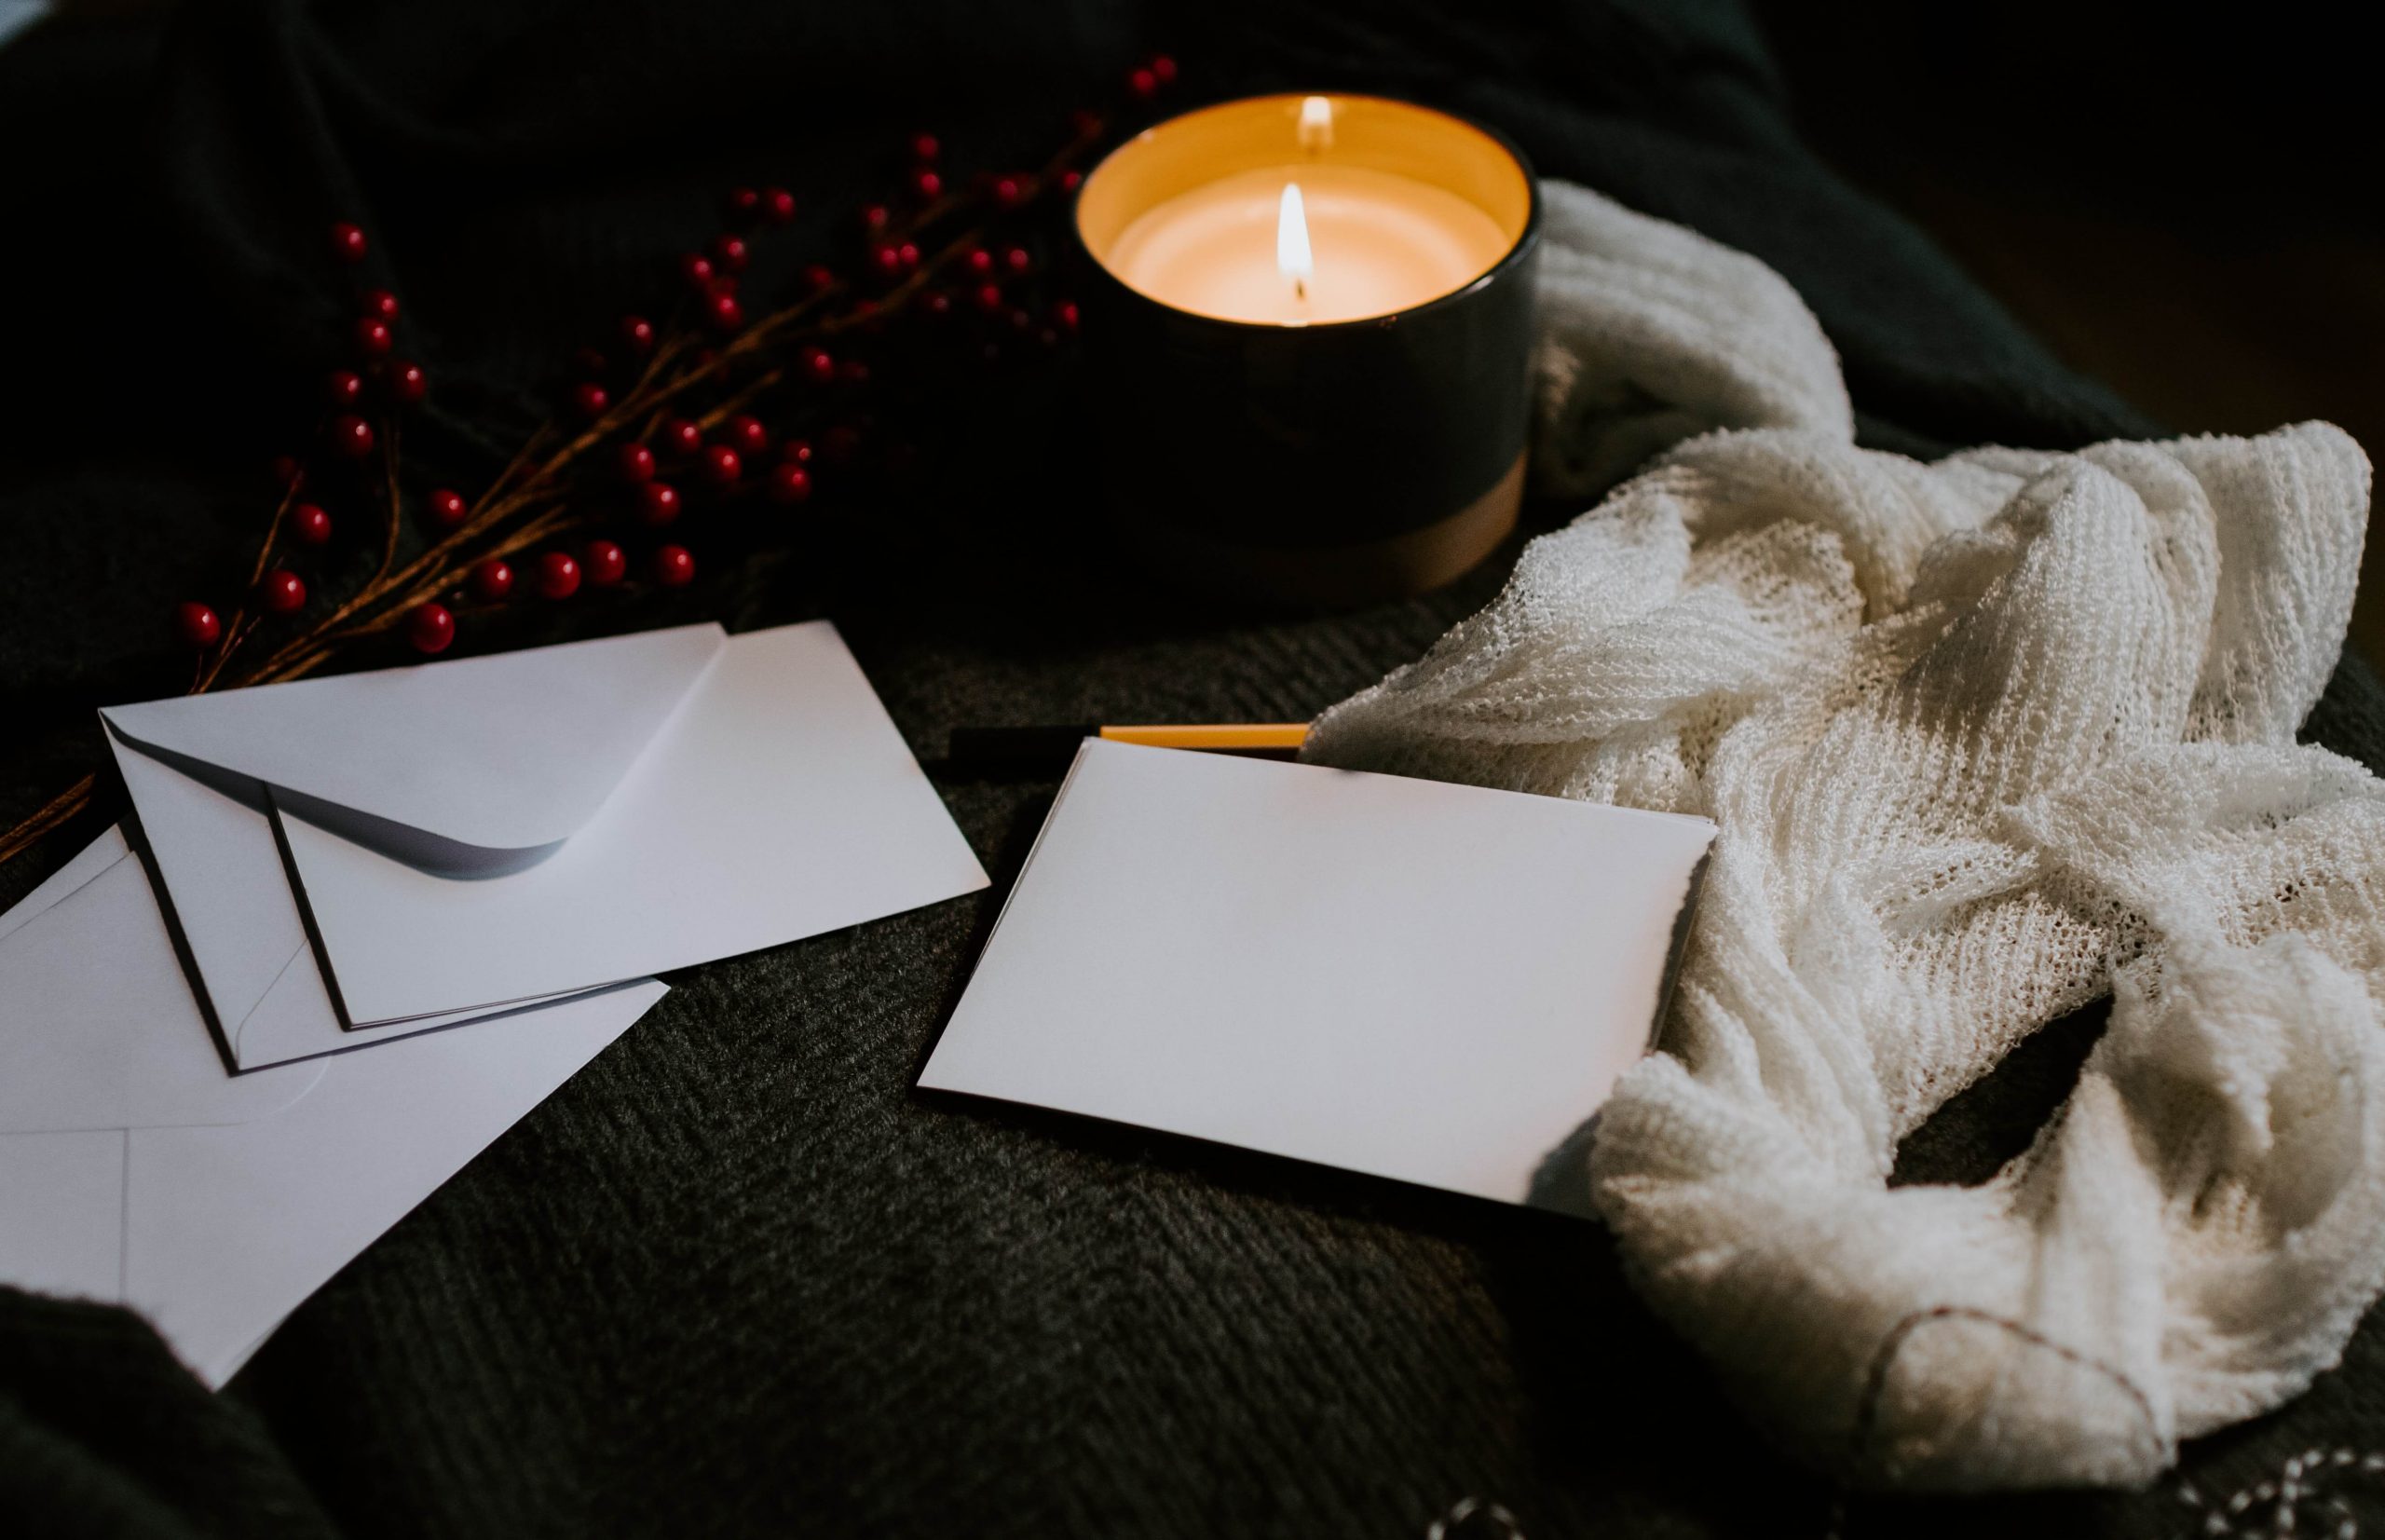 Imágen que muestra una vela y una carta de amor representando uno de los regalos para novios más comunes.